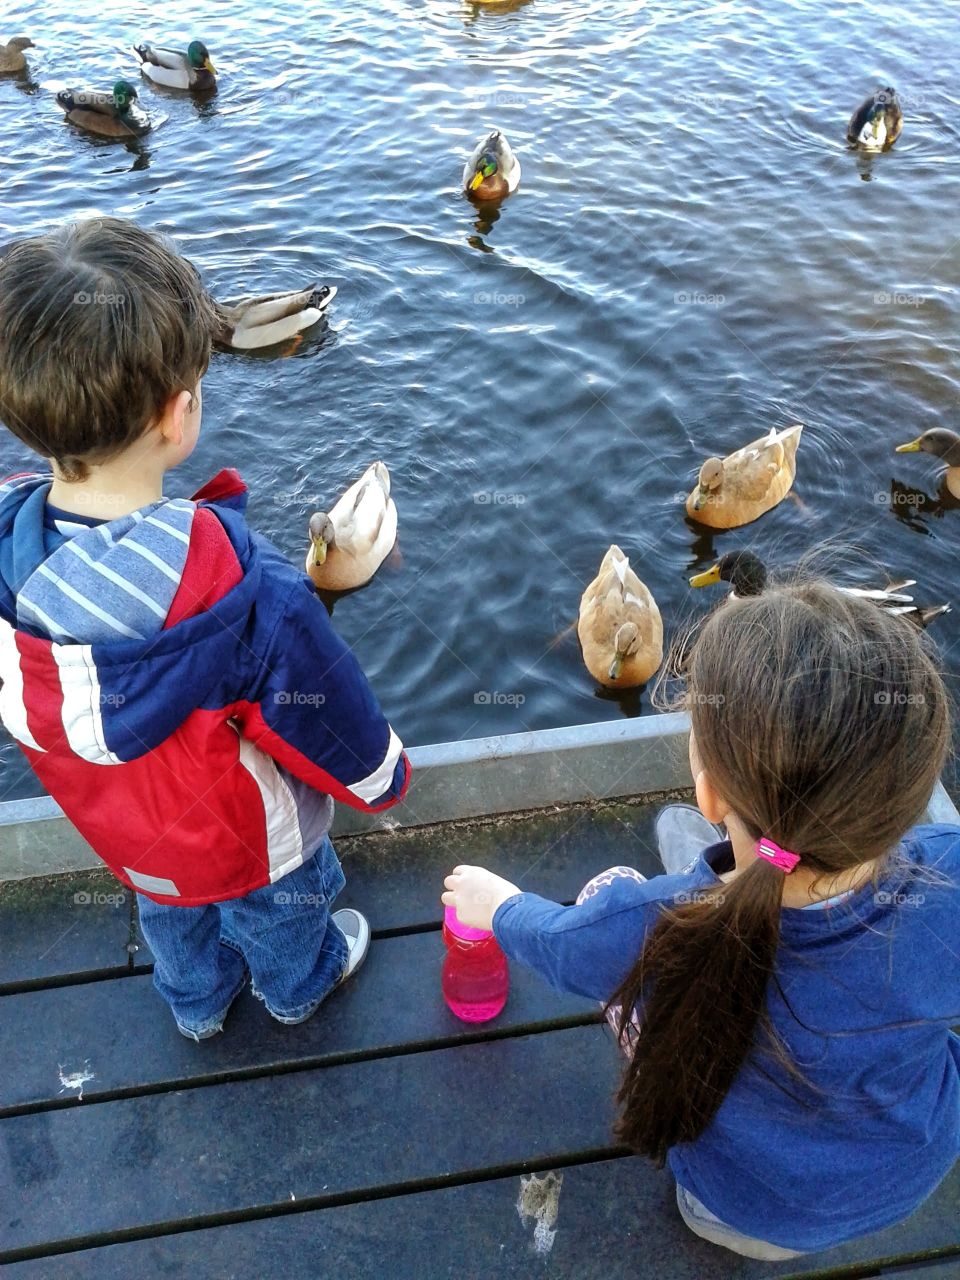 my kids enjoying the ducks